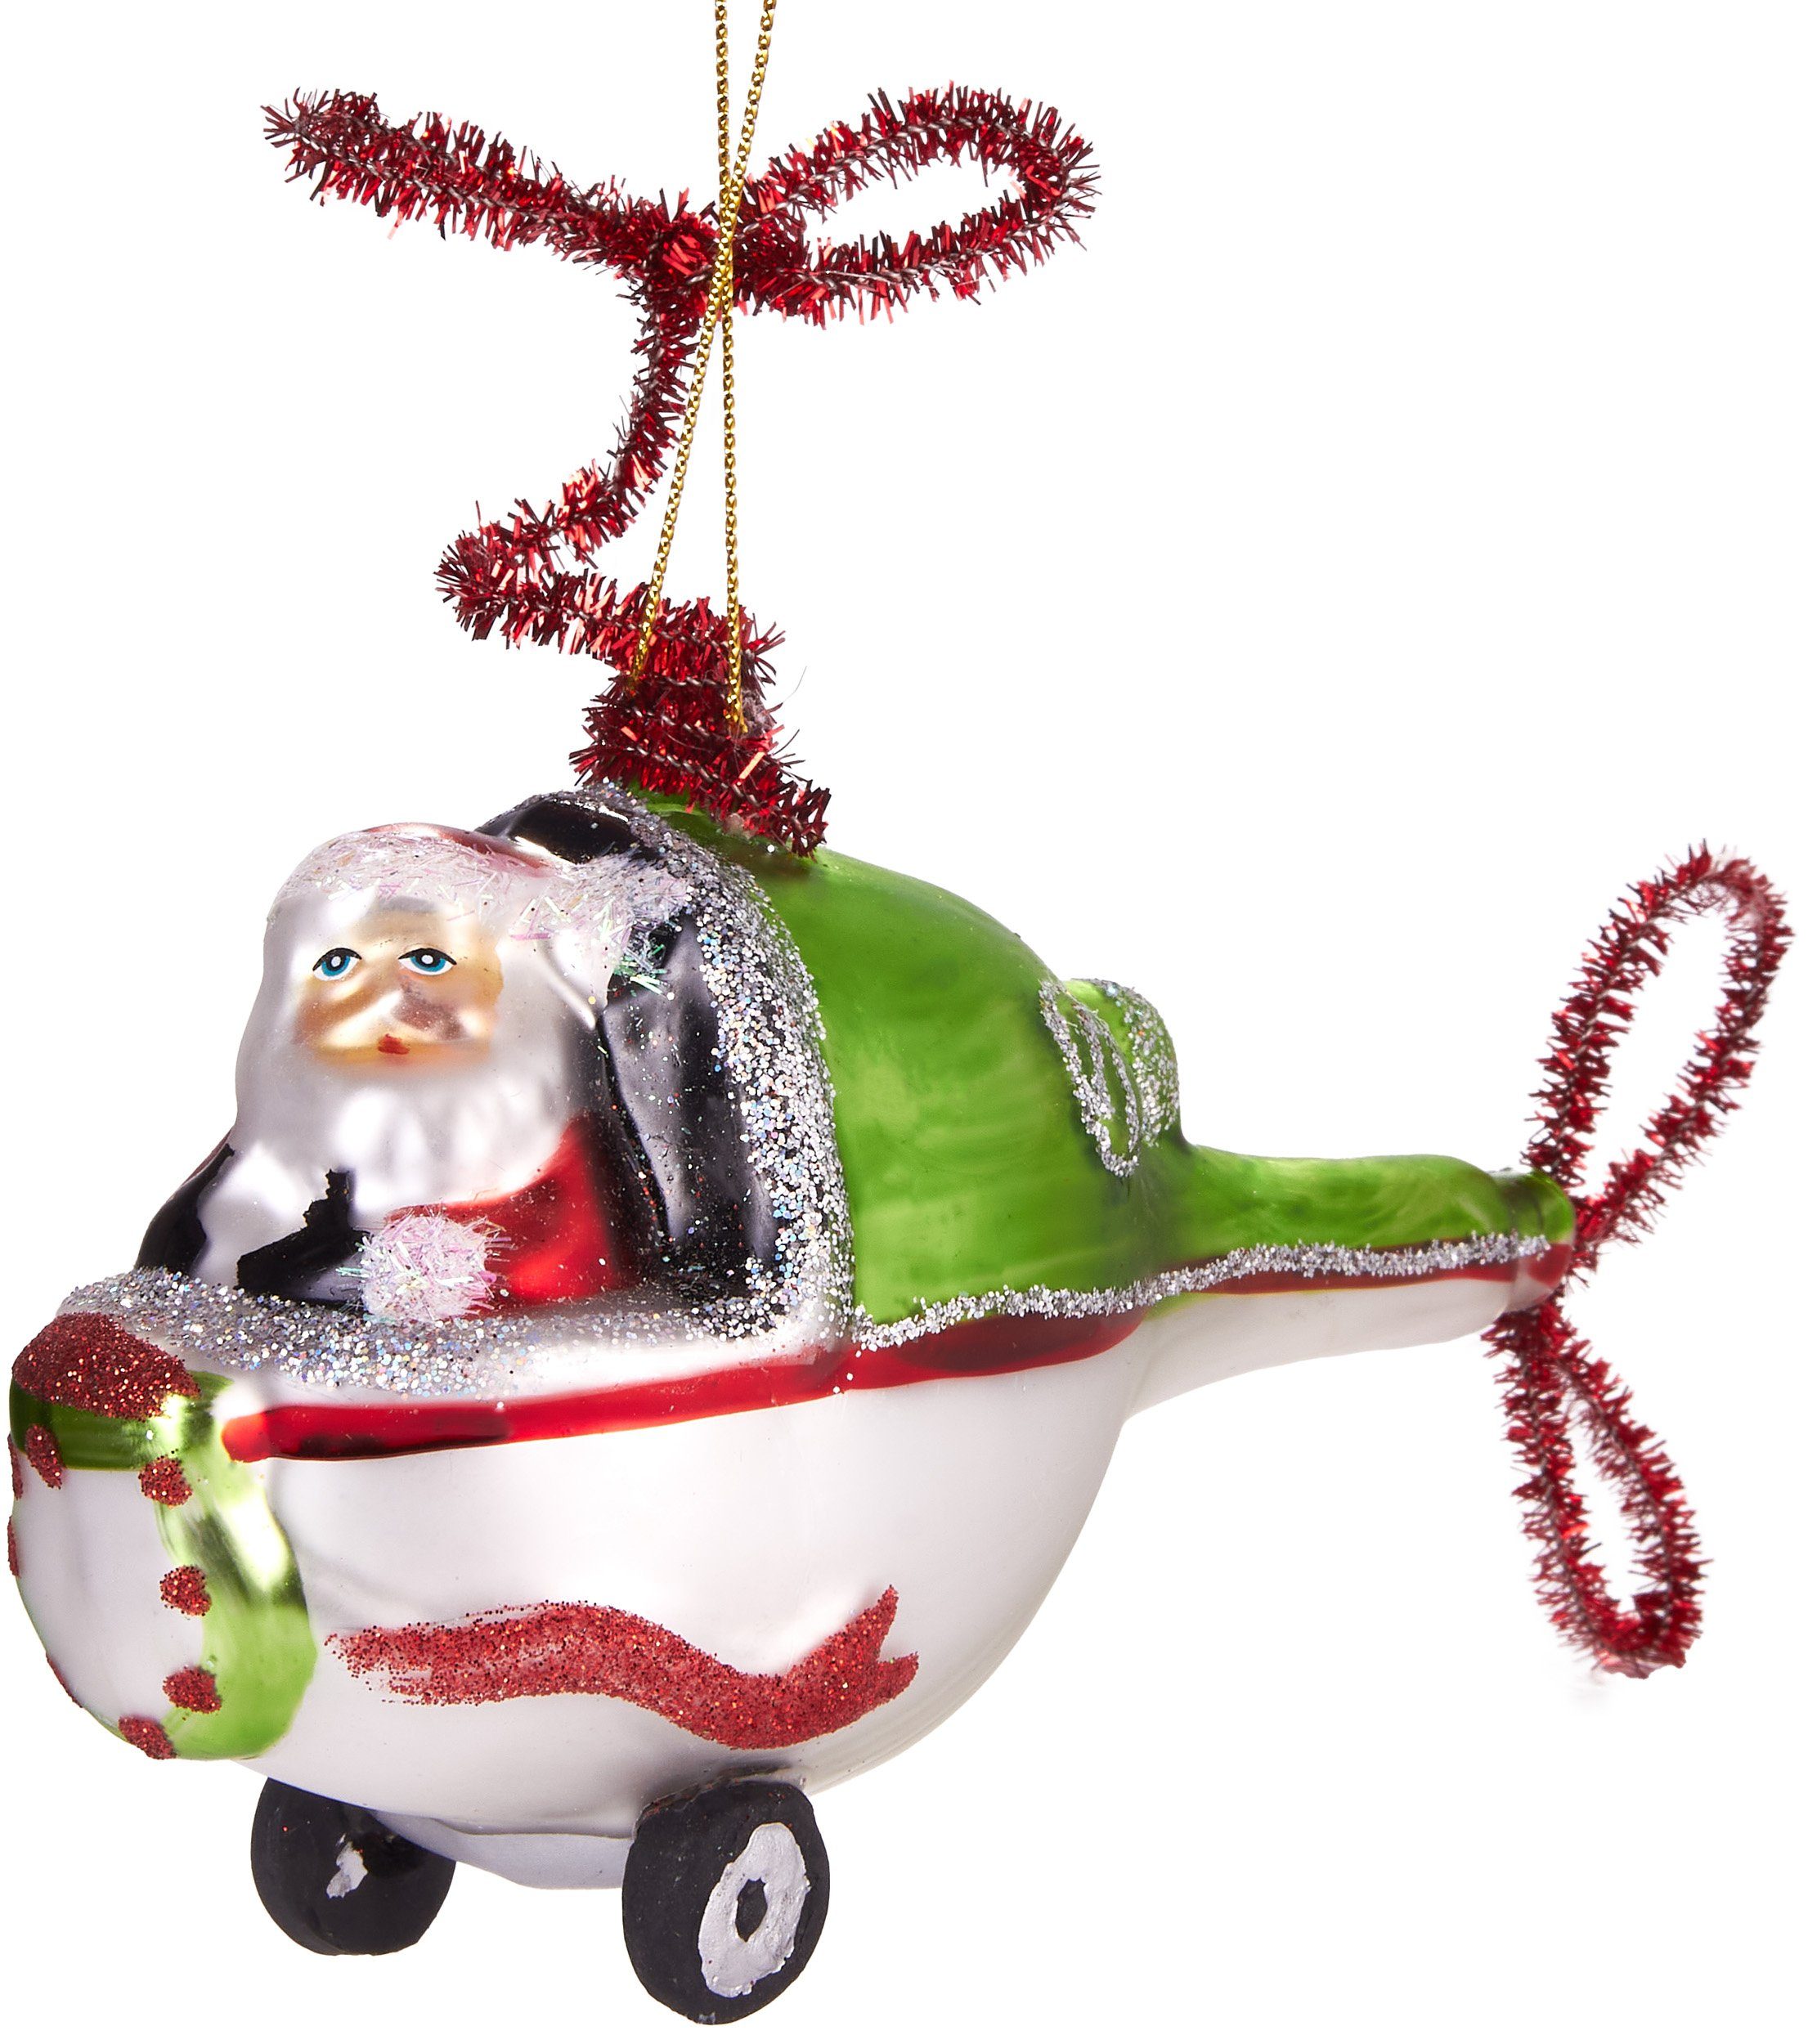 BRUBAKER Christbaumschmuck Handbemalte Weihnachtskugel Weihnachtsmann im Heli, fliegender Weihnachtsanhänger Hubschrauber Helikopter aus Glas, mundgeblasenes Unikat, lustige Baumkugel - 11 cm